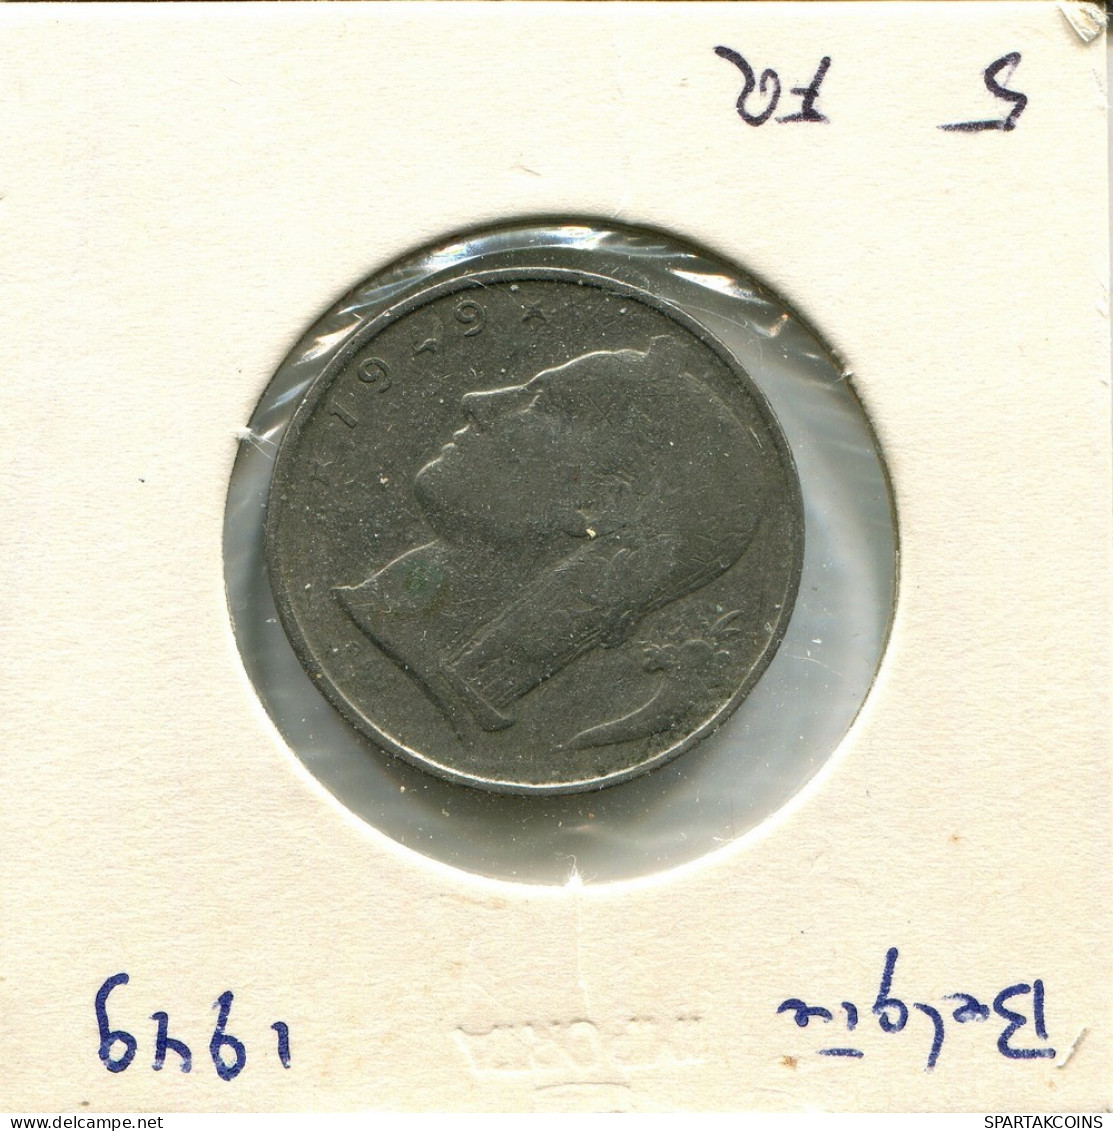 5 FRANCS 1949 DUTCH Text BELGIUM Coin #AU640.U.A - 5 Francs